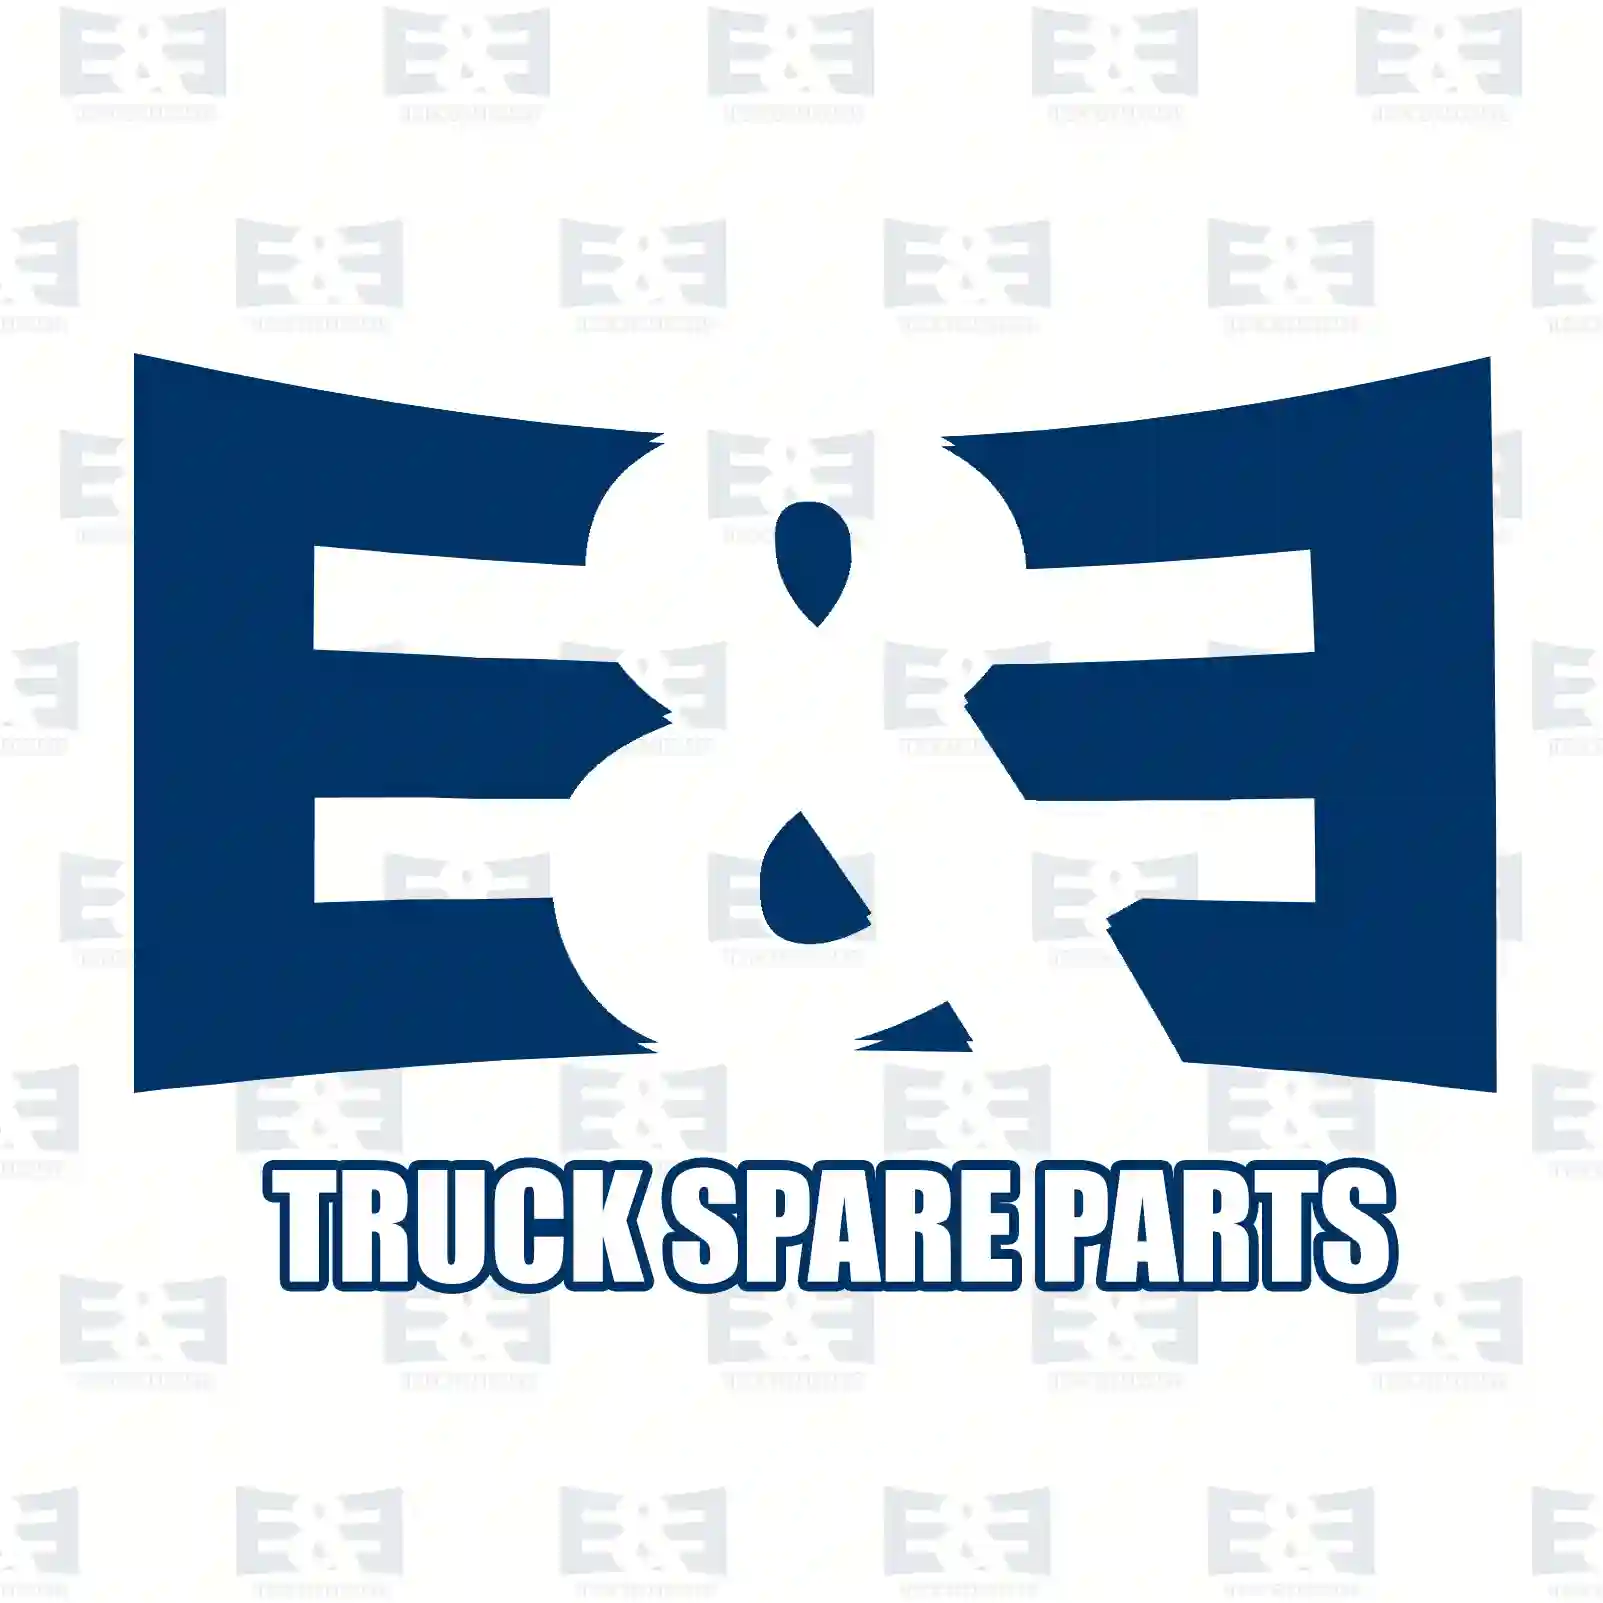 Bushing, 2E2206580, 51930200402, 51930200405, 2V5109499 ||  2E2206580 E&E Truck Spare Parts | Truck Spare Parts, Auotomotive Spare Parts Bushing, 2E2206580, 51930200402, 51930200405, 2V5109499 ||  2E2206580 E&E Truck Spare Parts | Truck Spare Parts, Auotomotive Spare Parts